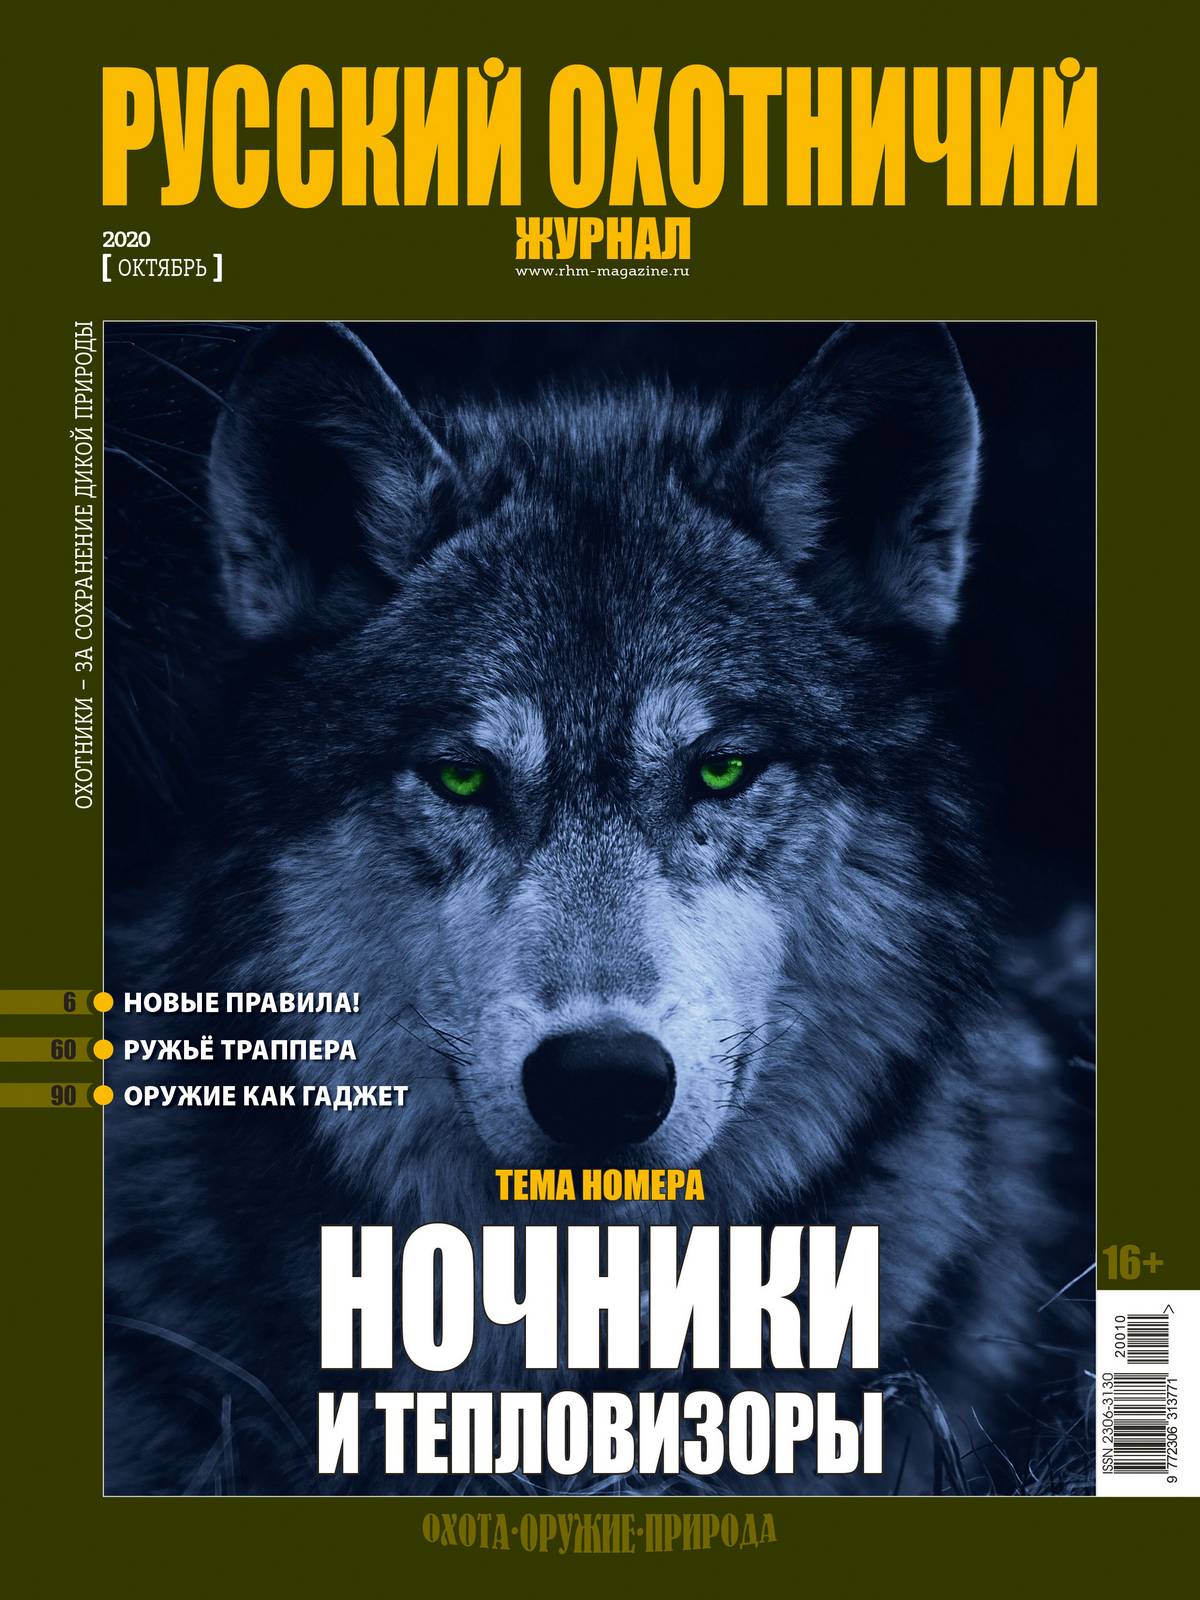 Ночники и тепловизоры. «Русский охотничий журнал», №10 октябрь 2020